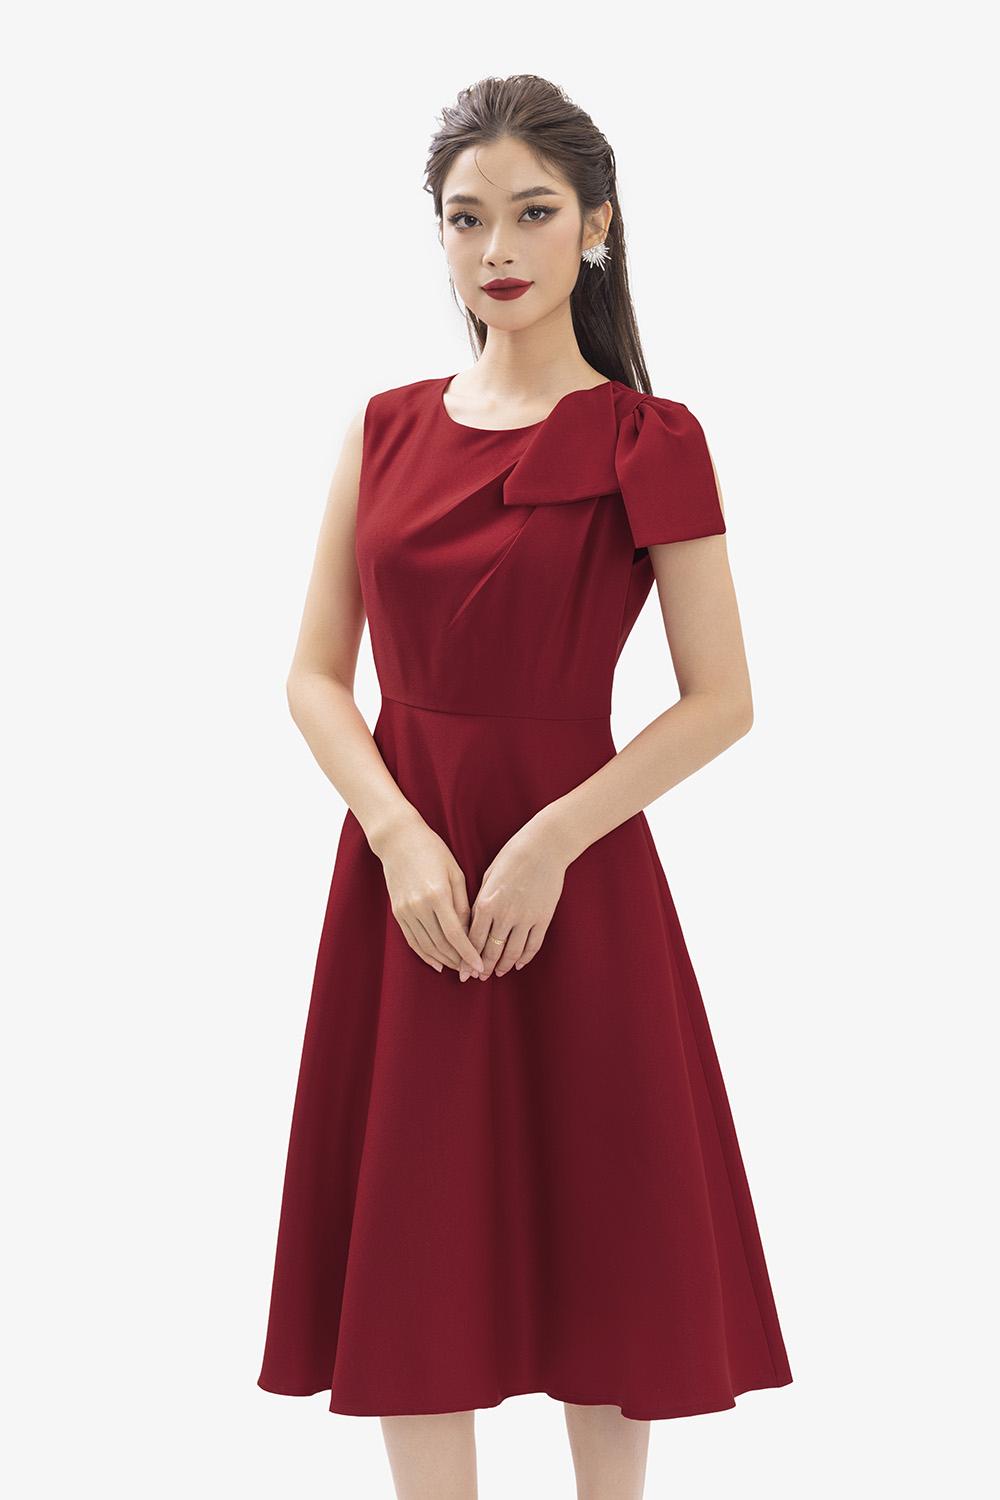 10 mẫu váy đỏ đẹp, sang trọng nhất dành cho các quý cô